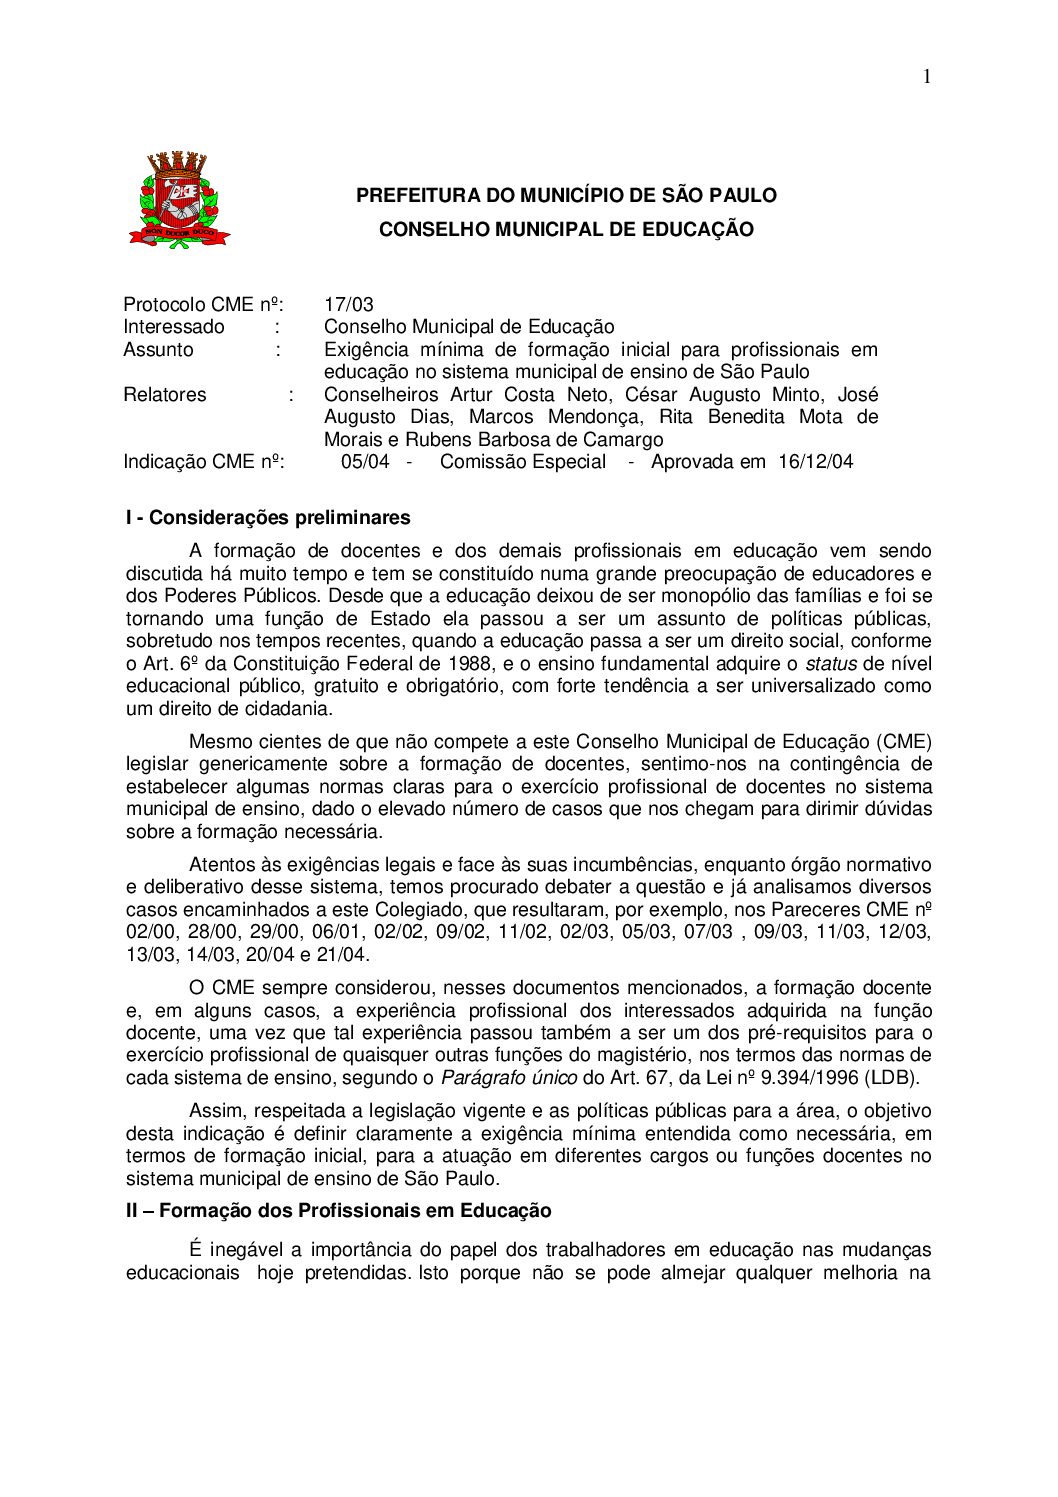 Indicação CME nº 05/2004 - Exigência mínima de formação inicial para profissionais em educação no sistema municipal de ensino de São Paulo 